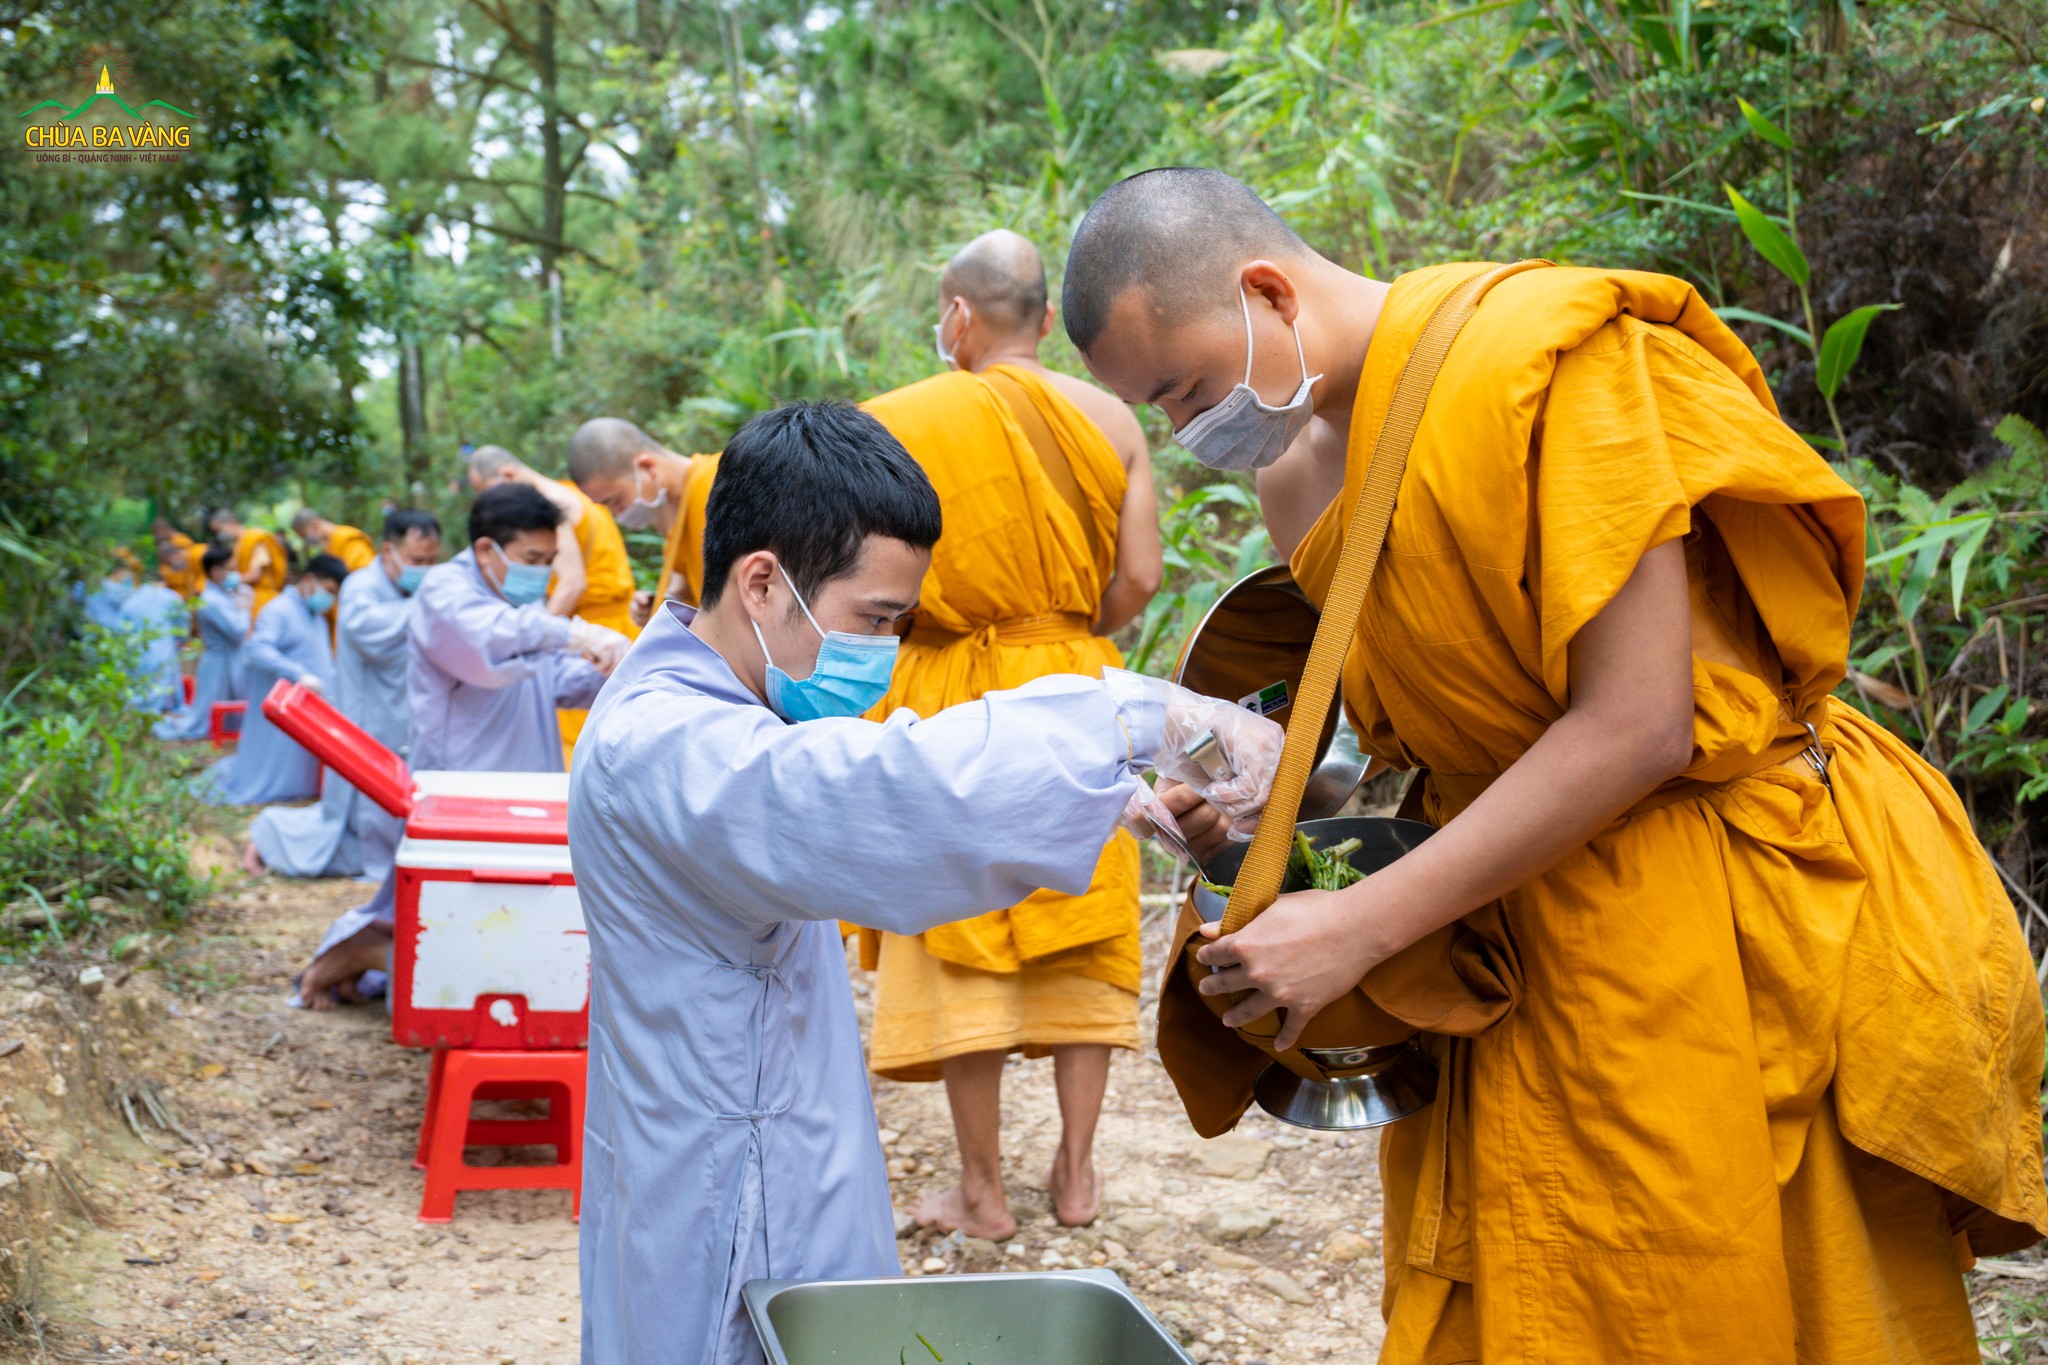 Phật tử chùa Ba Vàng thực hành hạnh bố thí, cúng dường tới bậc tu hành phạm hạnh  